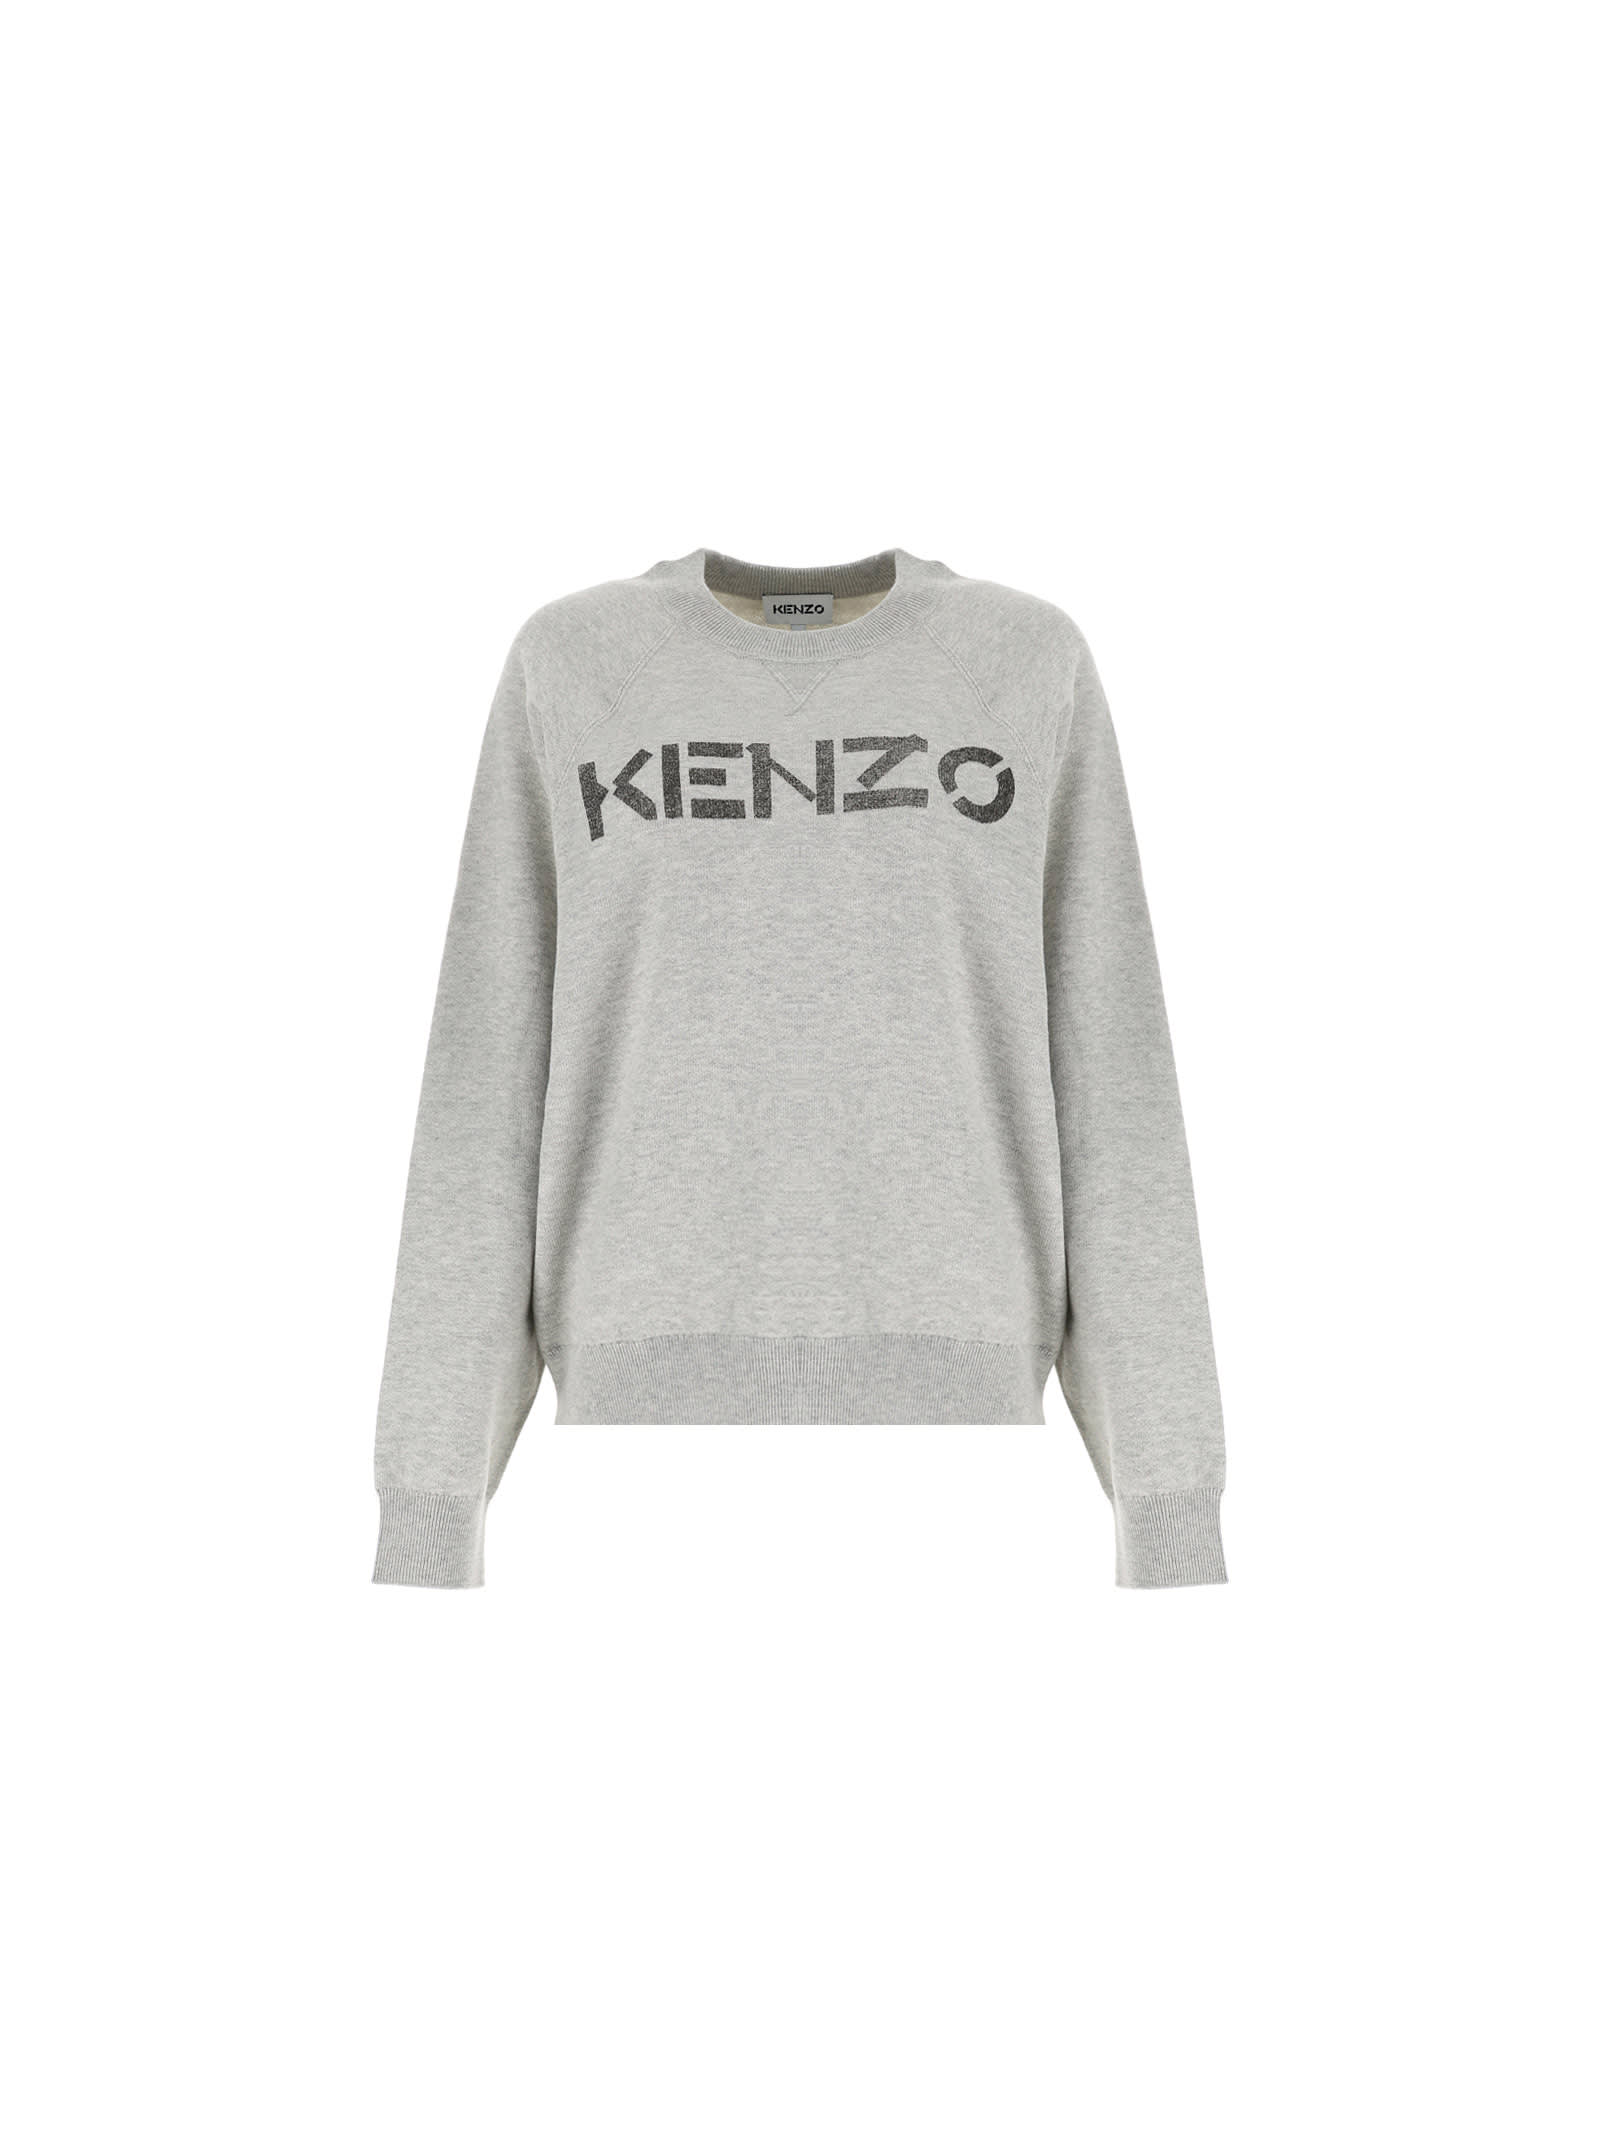 Kenzo Sweatshirt Kenzo Logo Seasonal